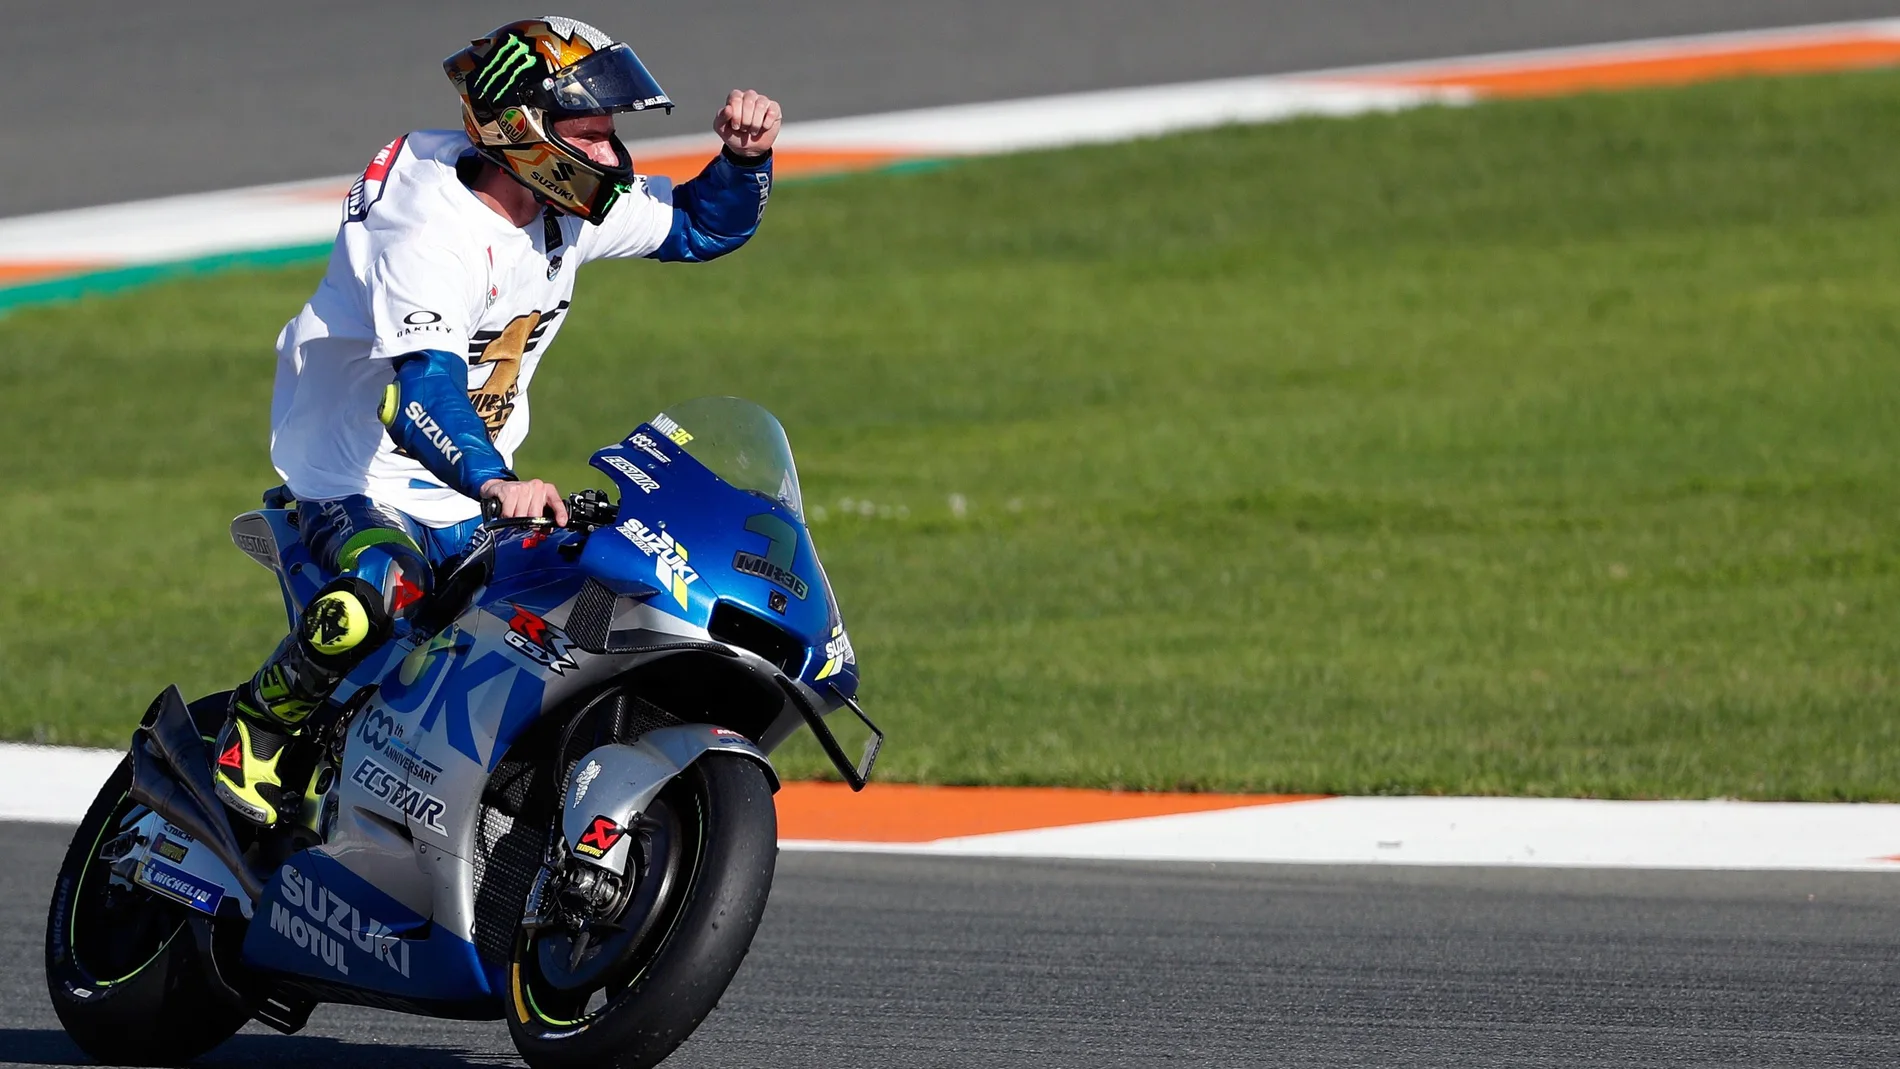 El piloto español de Moto GP, Joan Mir (Suzuki Ecstar) se ha proclamado campeón del mundo tras entrar 7º en la carrera disputada en el circuito Ricardo Tormo de Cheste (Valencia) donde se disputa el GP Comunitat Valenciana.